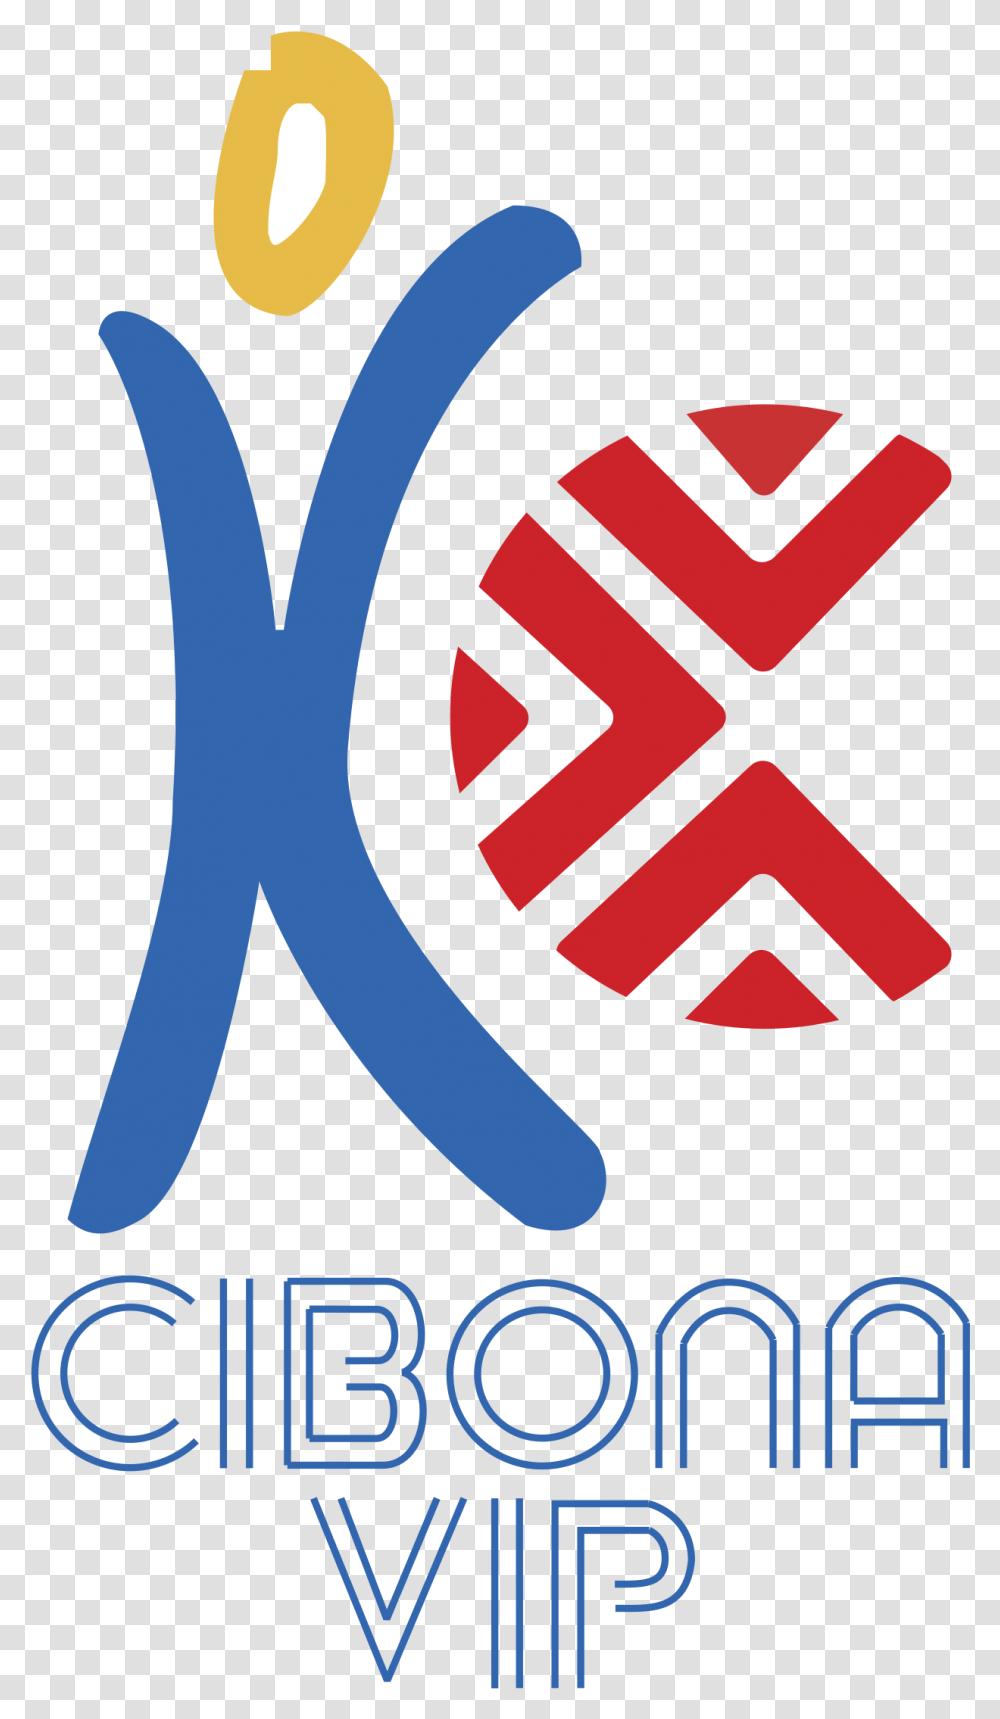 Cibona Vip, Logo, Trademark, Poster Transparent Png